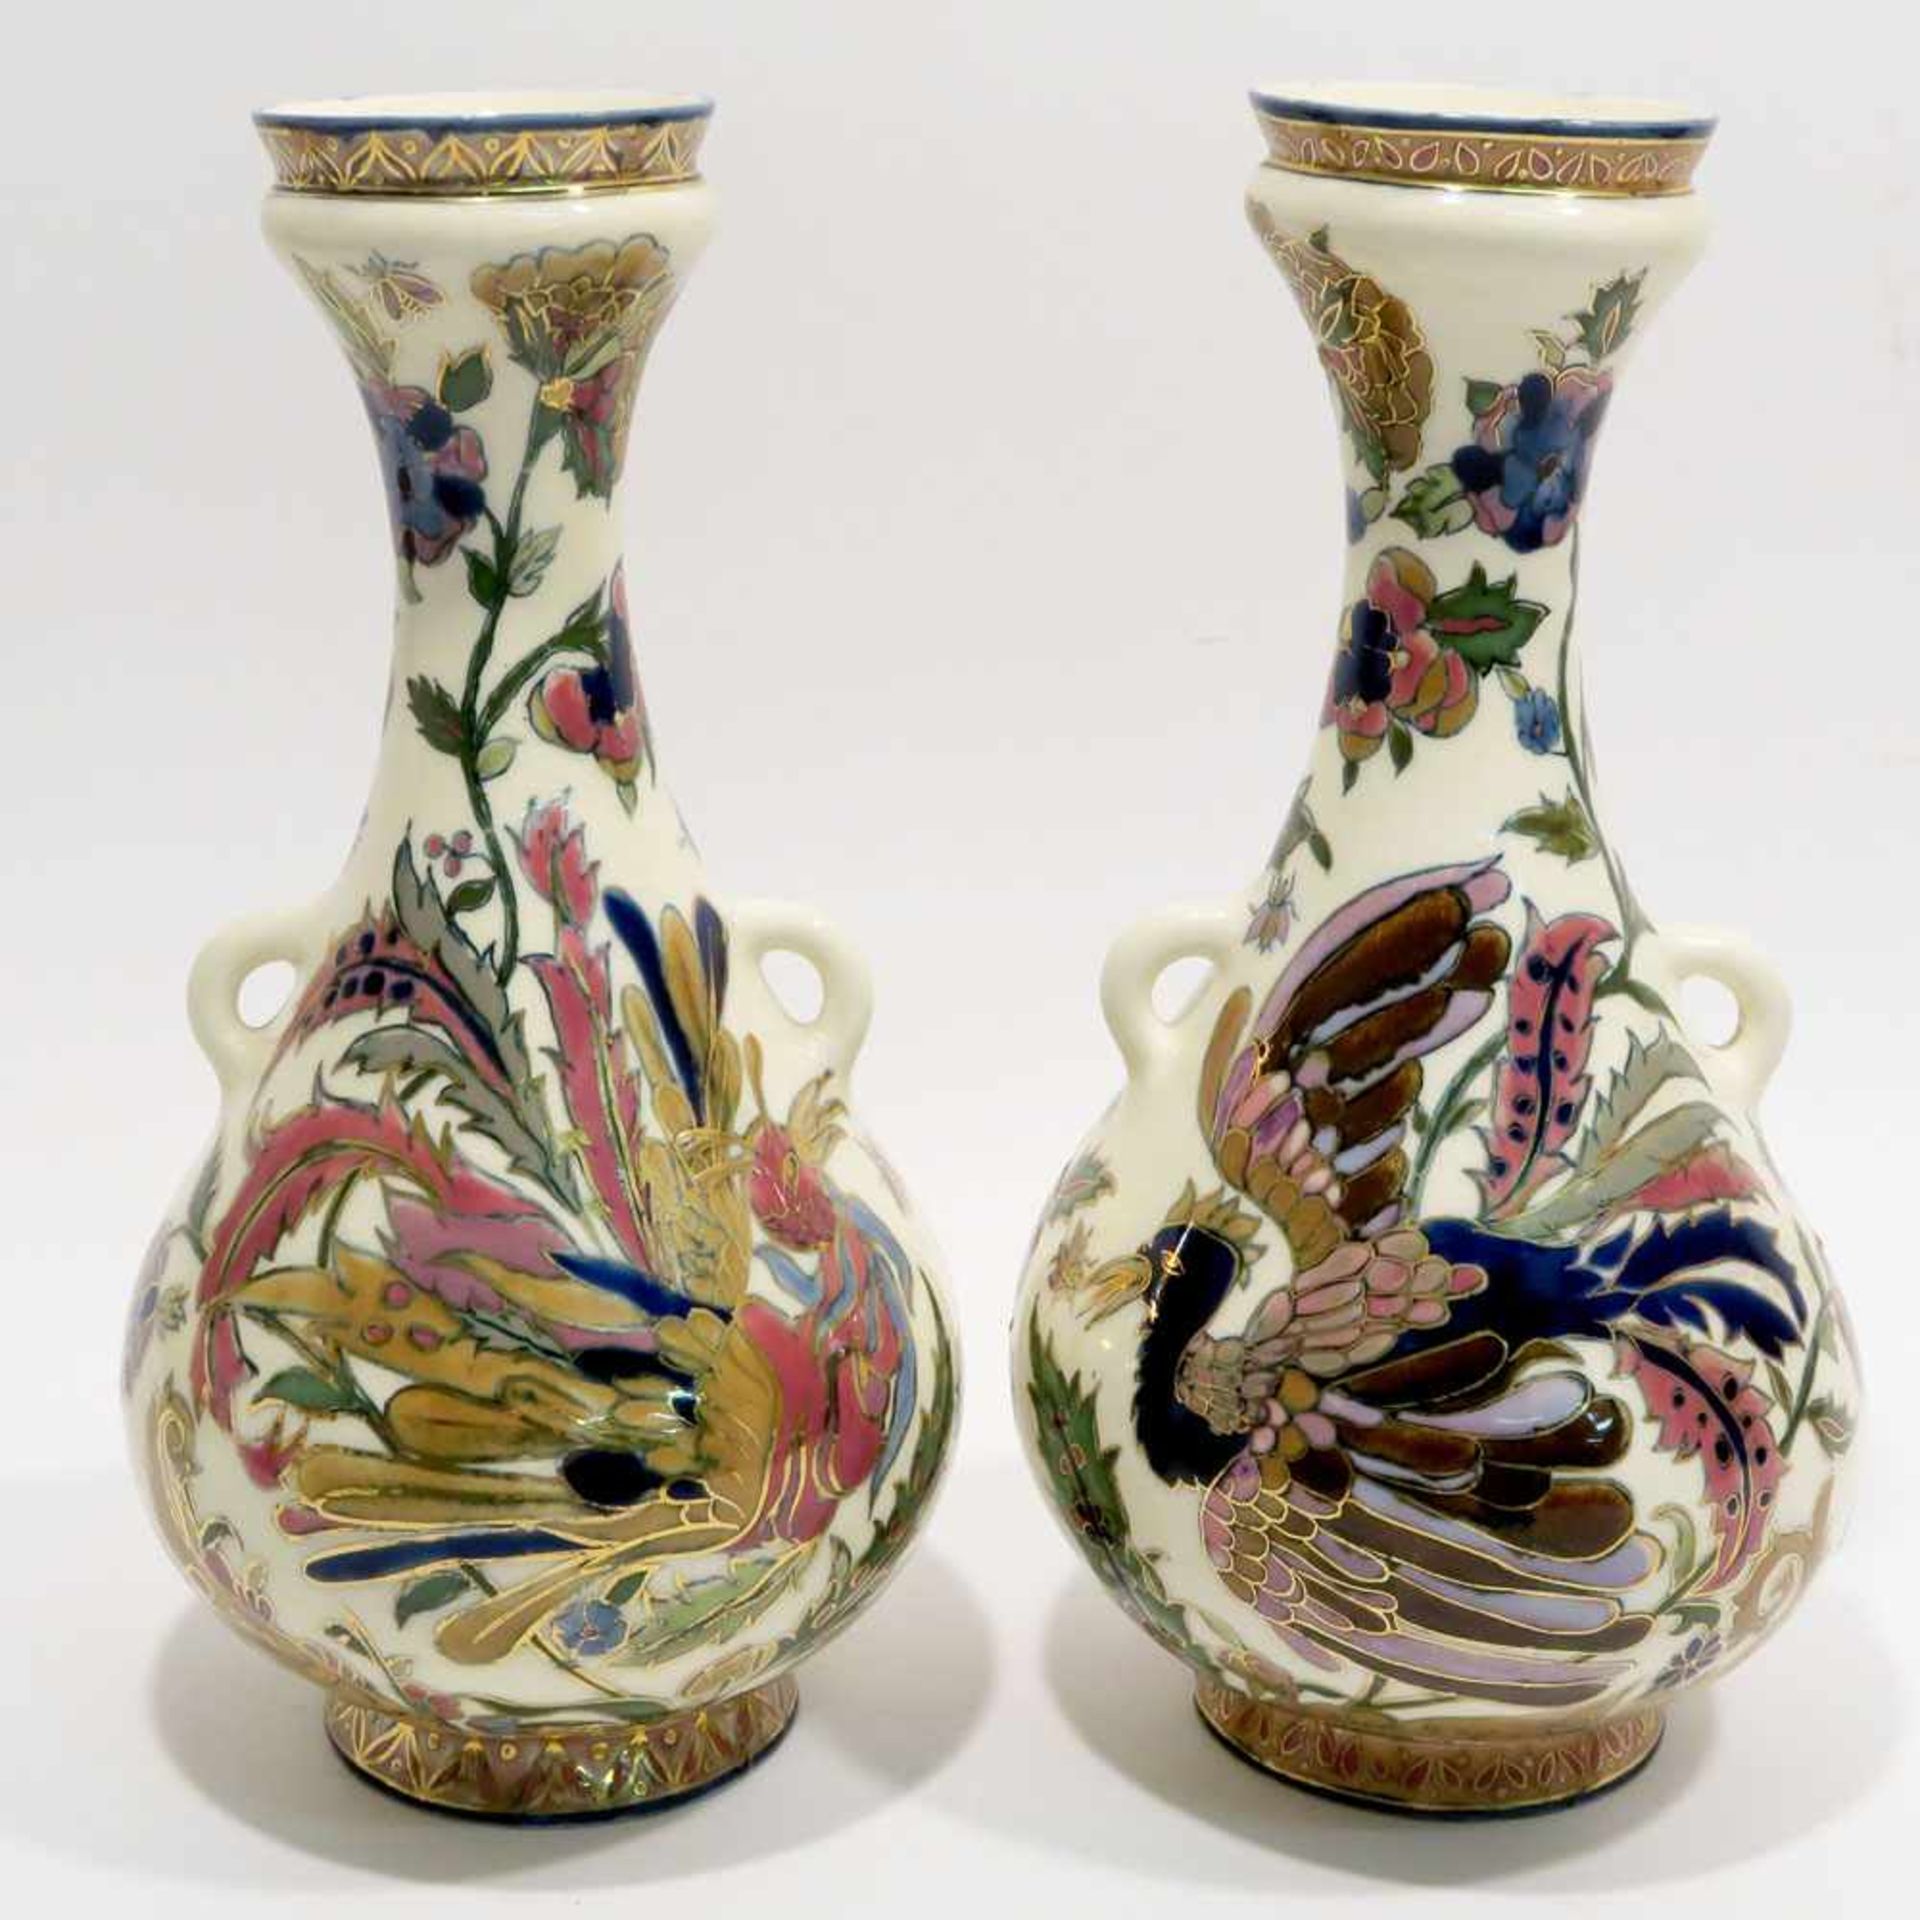 Ein Paar VasenZsolnay/Pécs, letztes Viertel 19. Jh. Keramik, weiß glasiert, polychromer, - Image 2 of 2